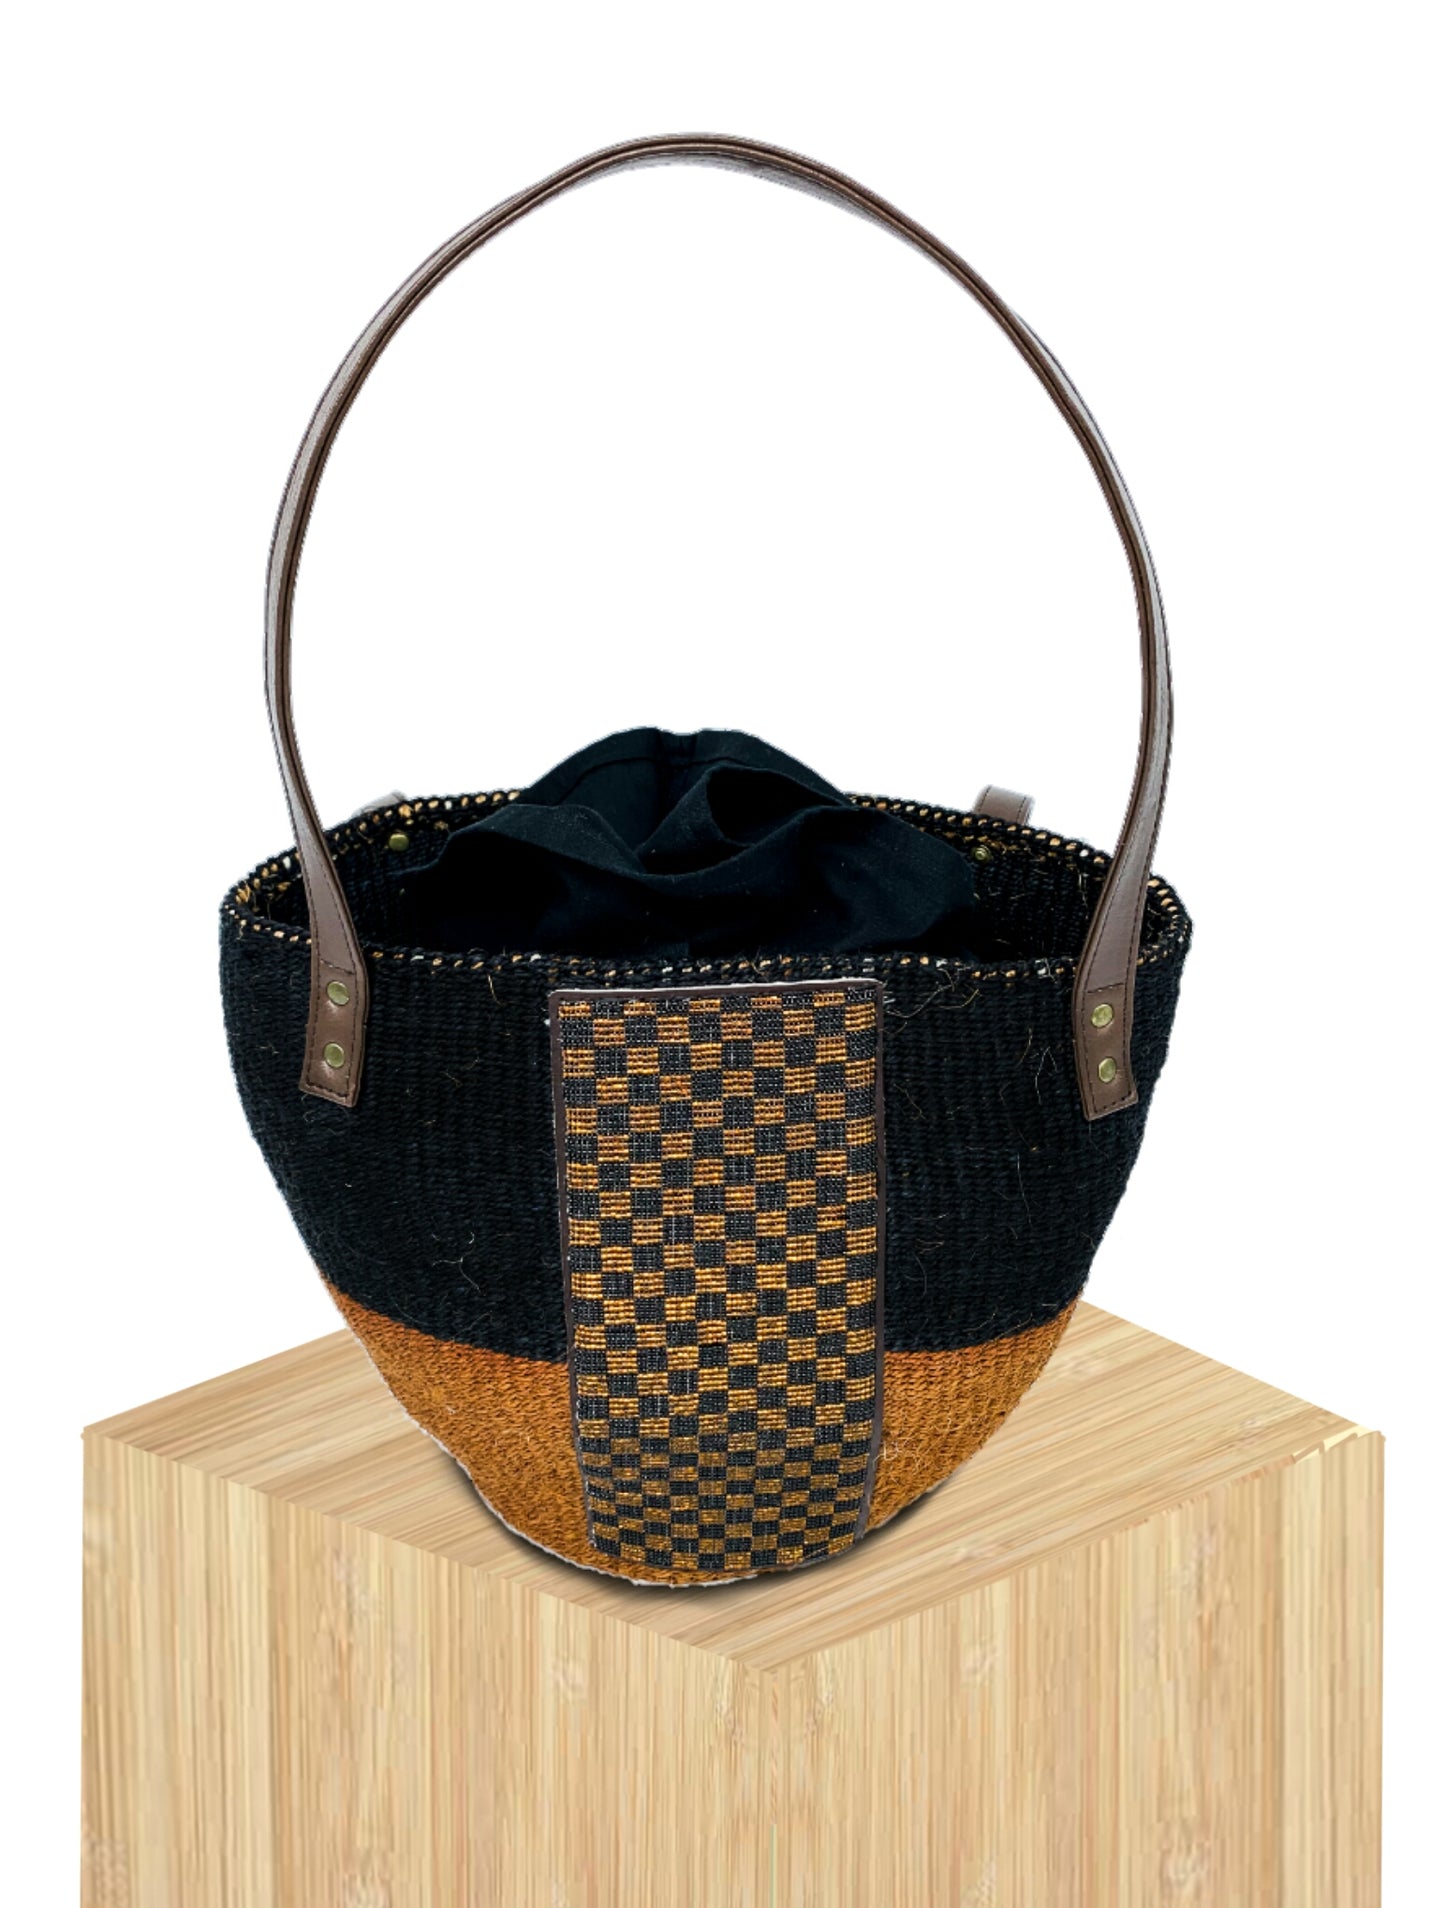 Handwoven Basket Bag, straw bag French Basket, Moroccan Basket, french market basket, Beach Bag, French baskets, Natural Basket , Leather handle woven bag